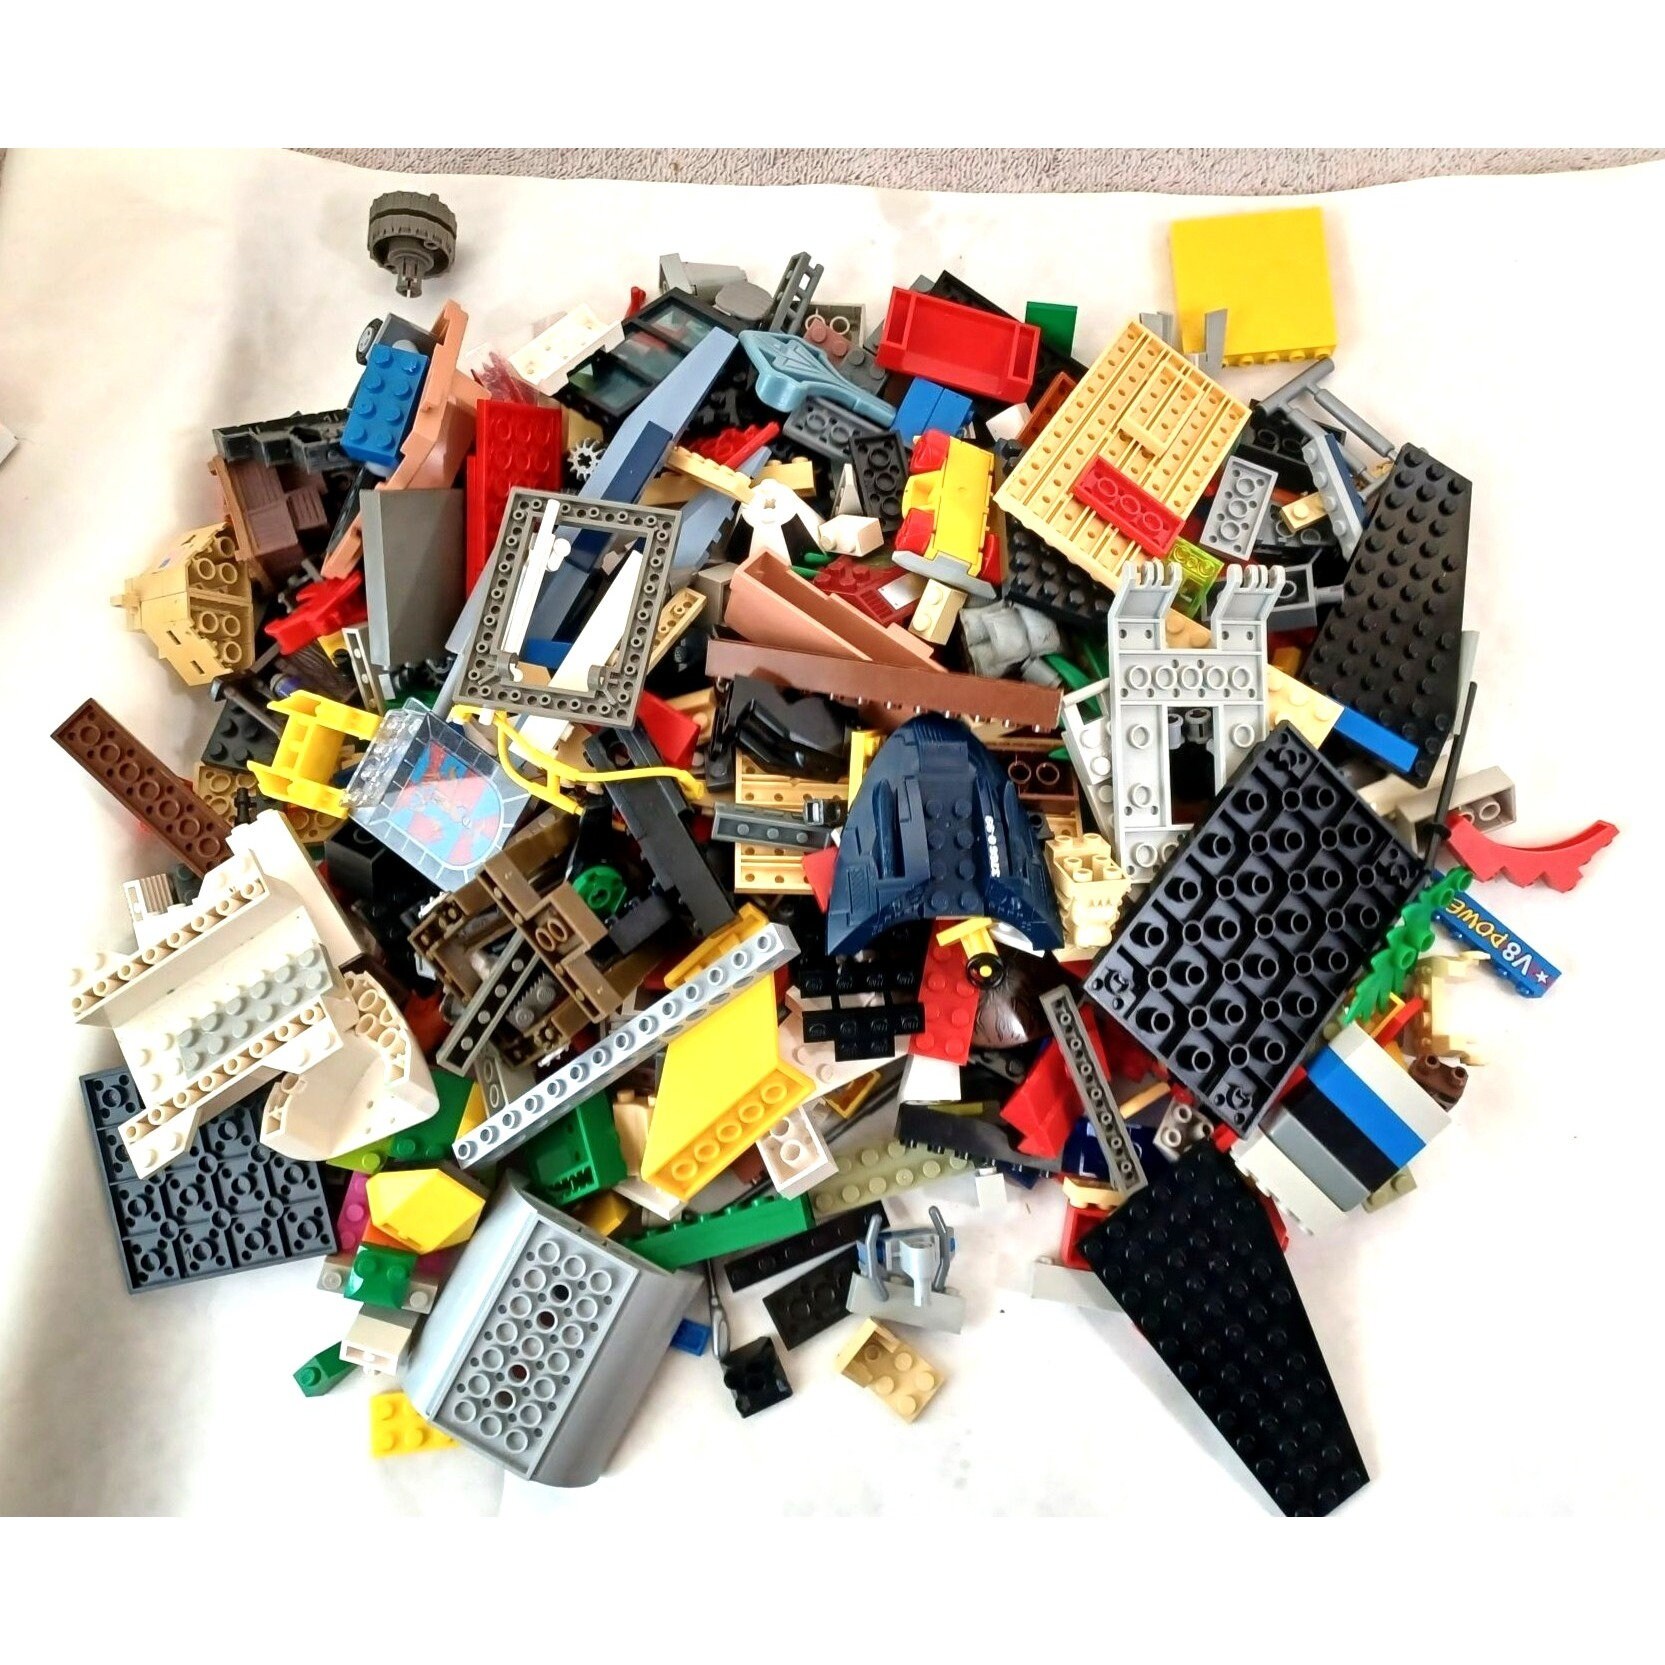 Udfør maske Håndbog Lot of 3 Assorted Lego's Bulk Random Parts Building Toys - Etsy